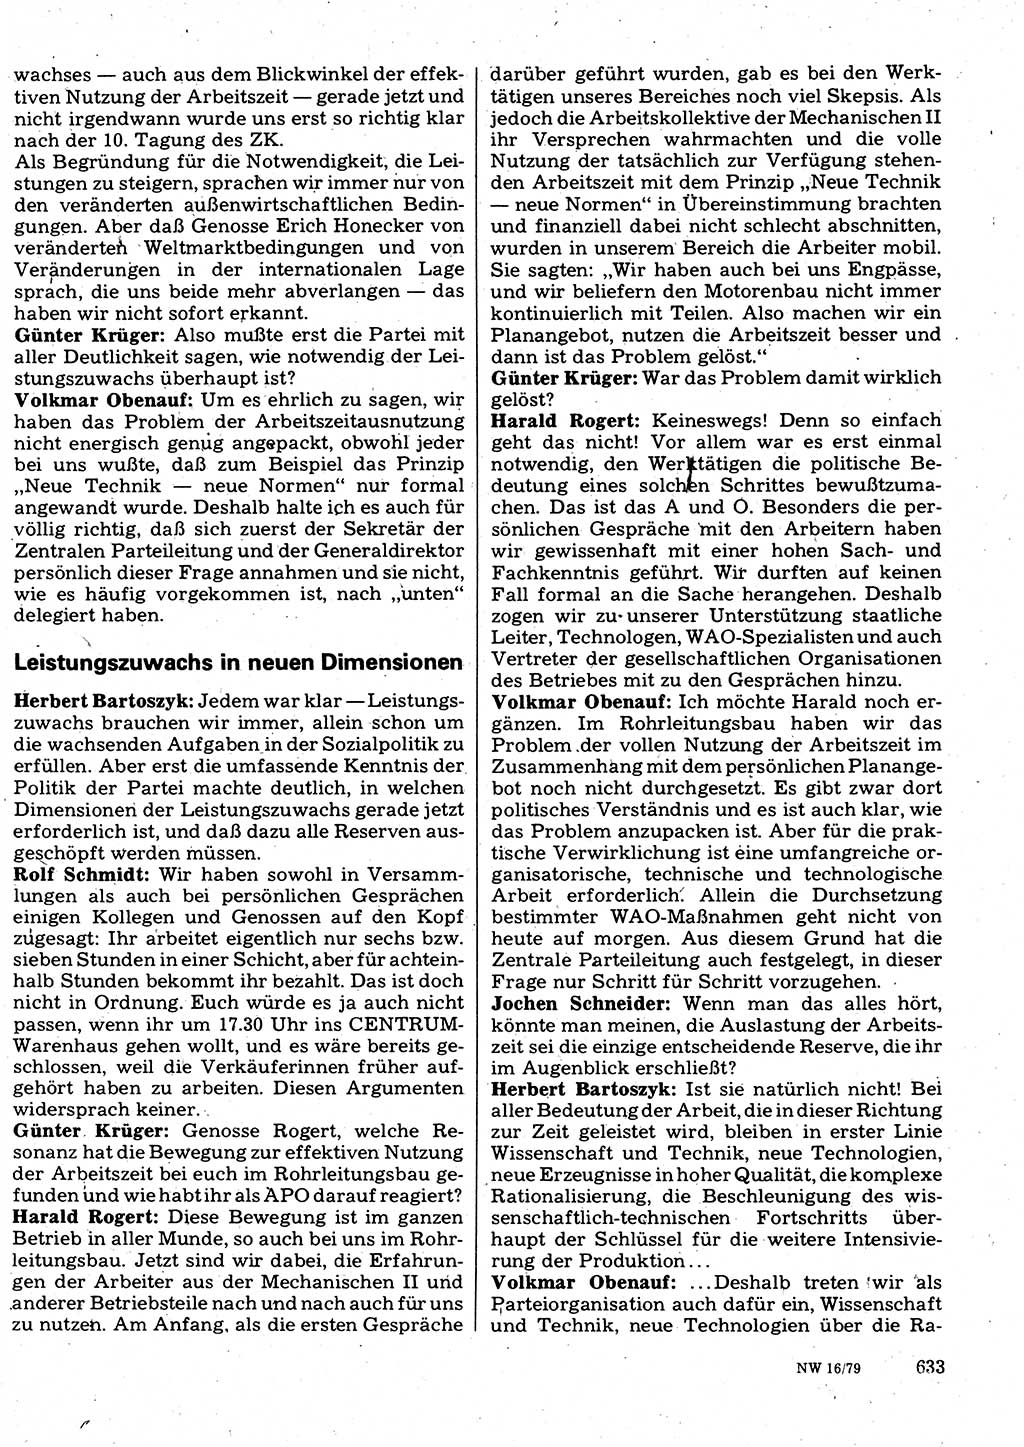 Neuer Weg (NW), Organ des Zentralkomitees (ZK) der SED (Sozialistische Einheitspartei Deutschlands) für Fragen des Parteilebens, 34. Jahrgang [Deutsche Demokratische Republik (DDR)] 1979, Seite 633 (NW ZK SED DDR 1979, S. 633)